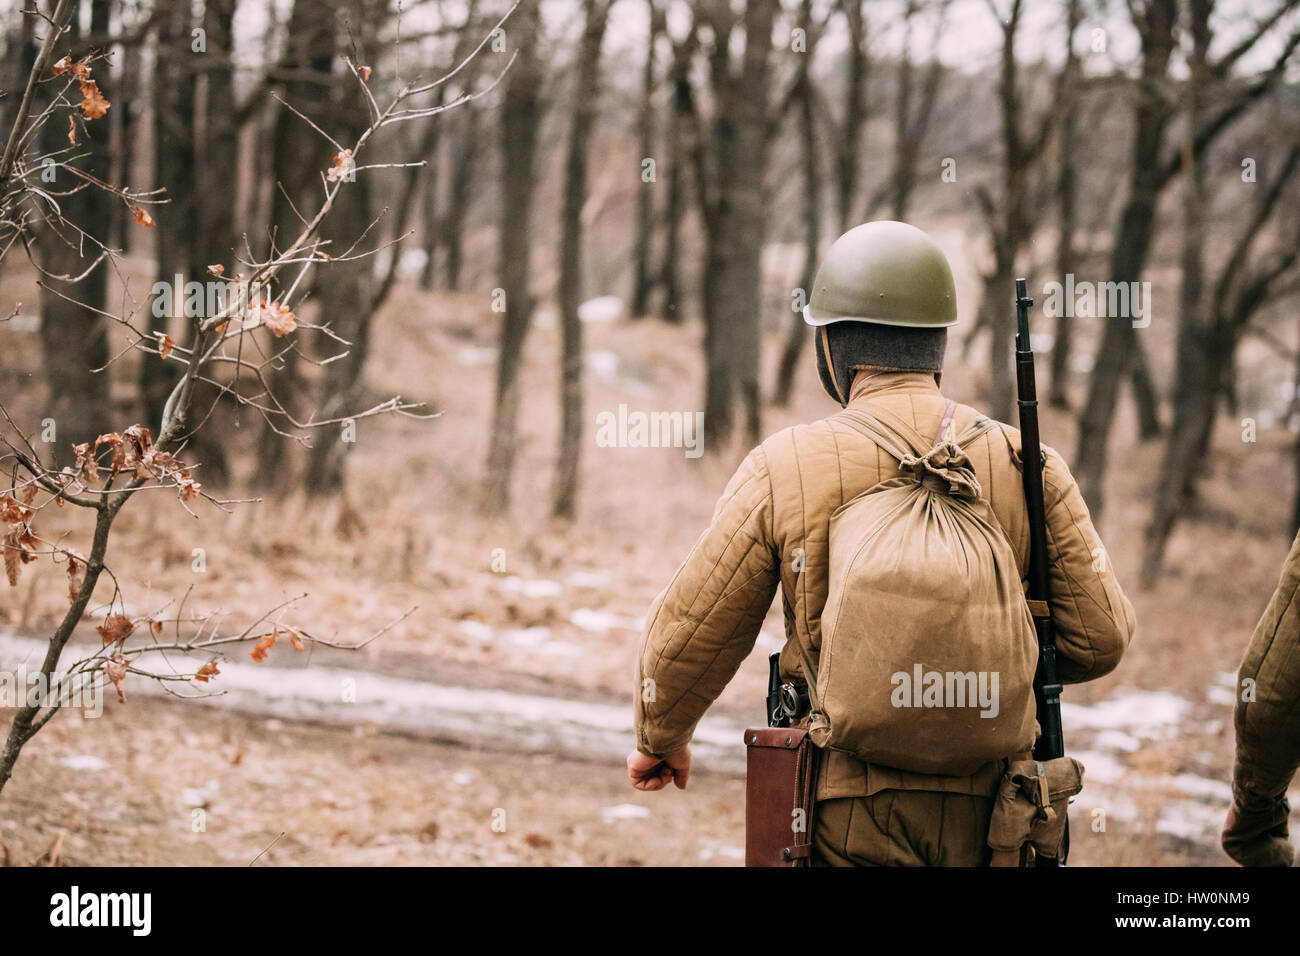 La reconstitution médiévale habillé en Russie soviétique de l'Armée Rouge Soldat d'infanterie de la Seconde Guerre mondiale, marchant le long de la route forestière à l'automne Banque D'Images